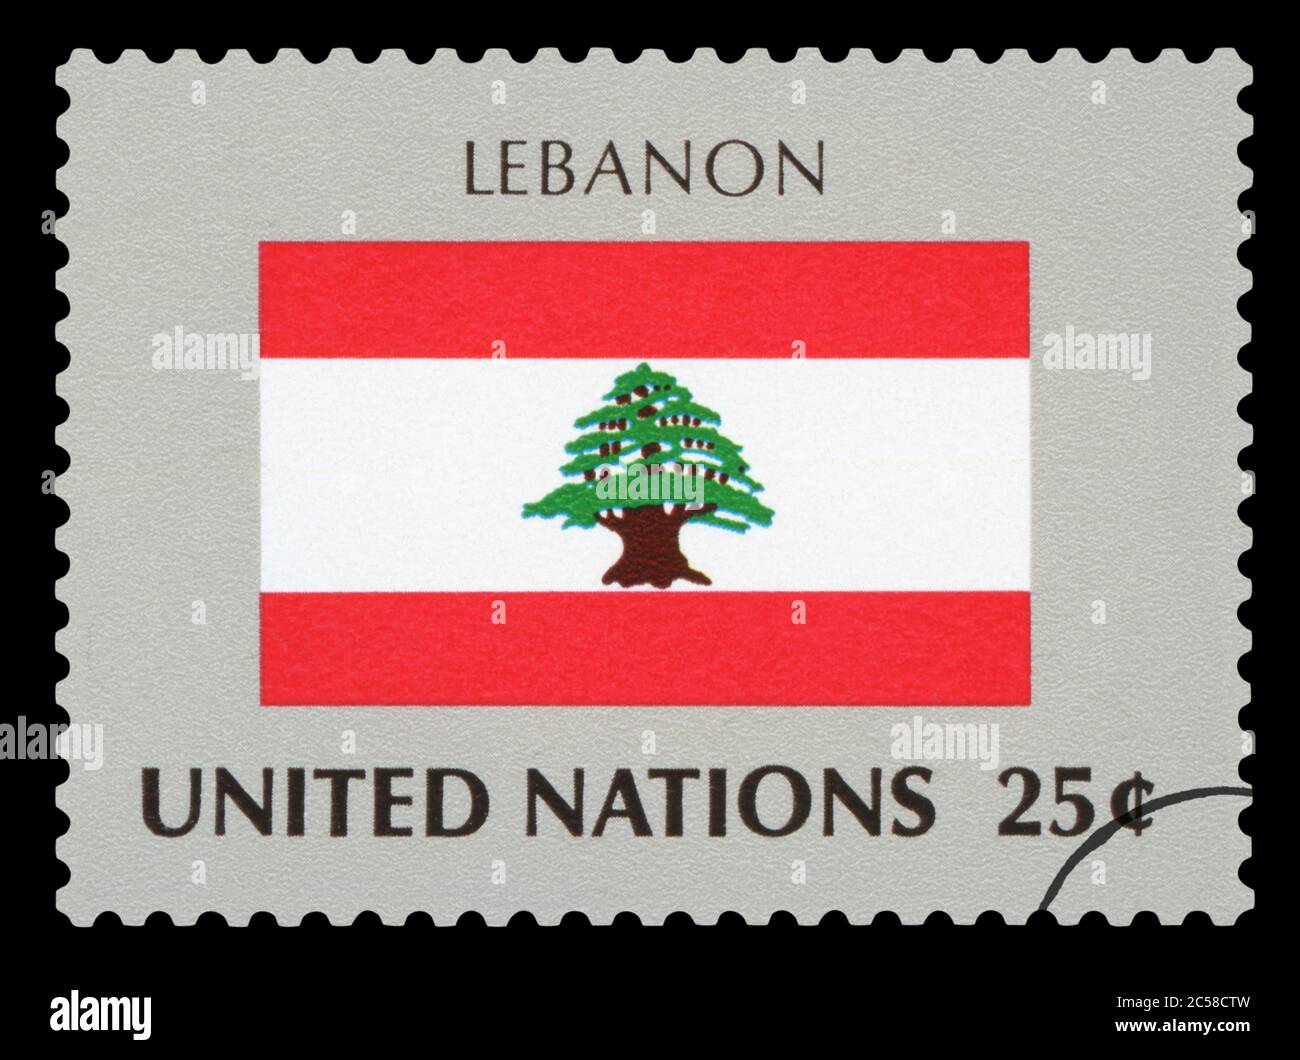 LÍBANO - Sello de postage de la bandera nacional del Líbano, serie de Naciones Unidas, alrededor de 1984. Foto de stock